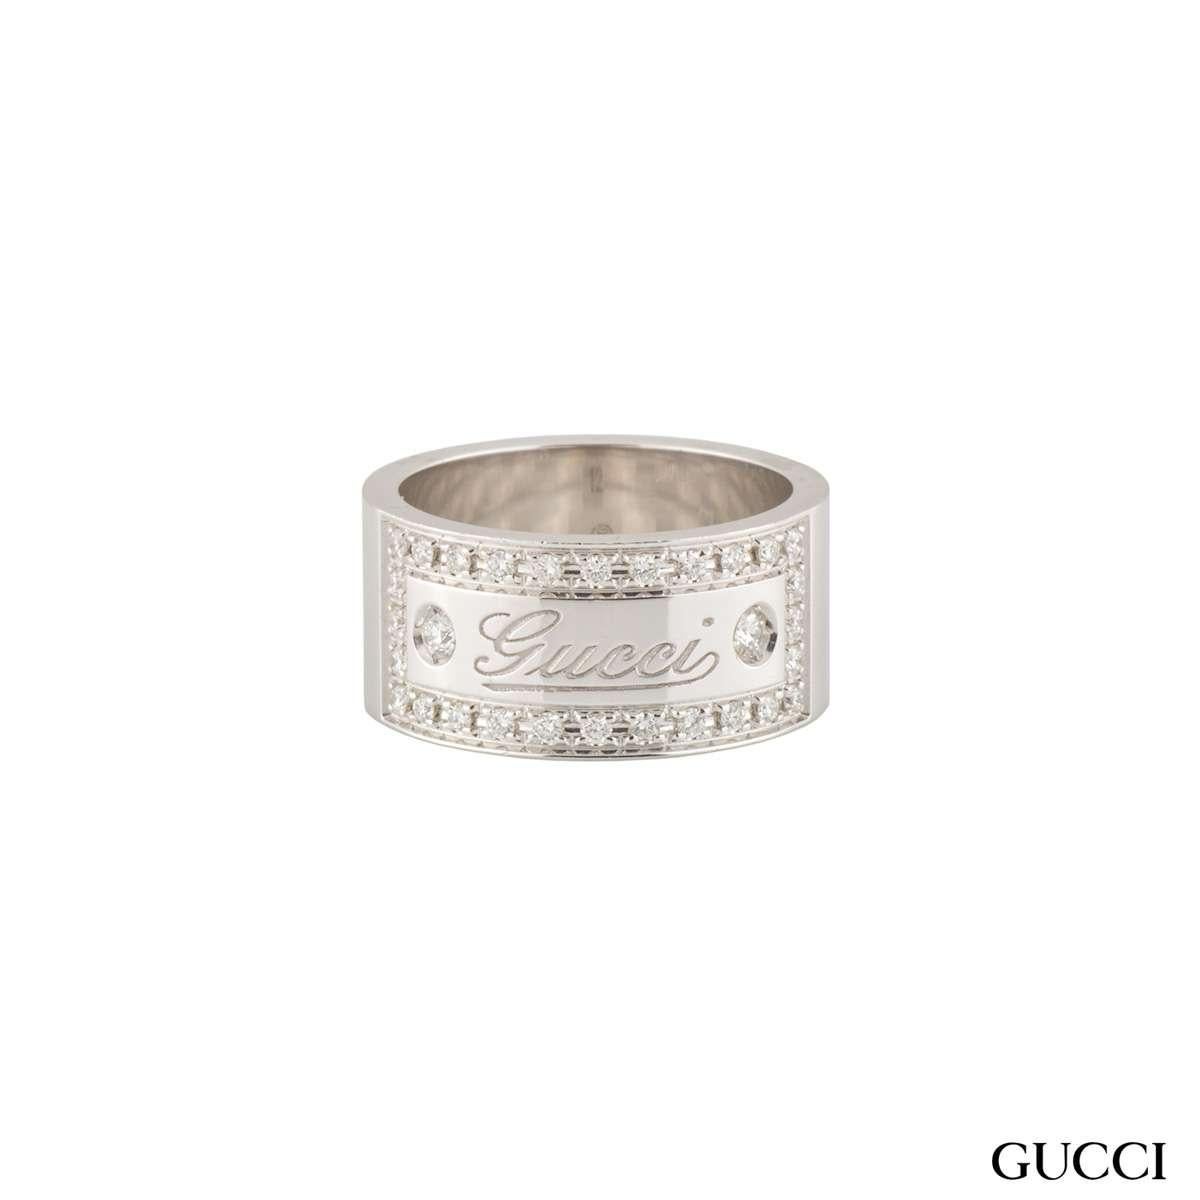 Une belle bague Gucci en or blanc 18 carats et diamant. La bague se compose d'un anneau plat de 9 mm avec le logo 